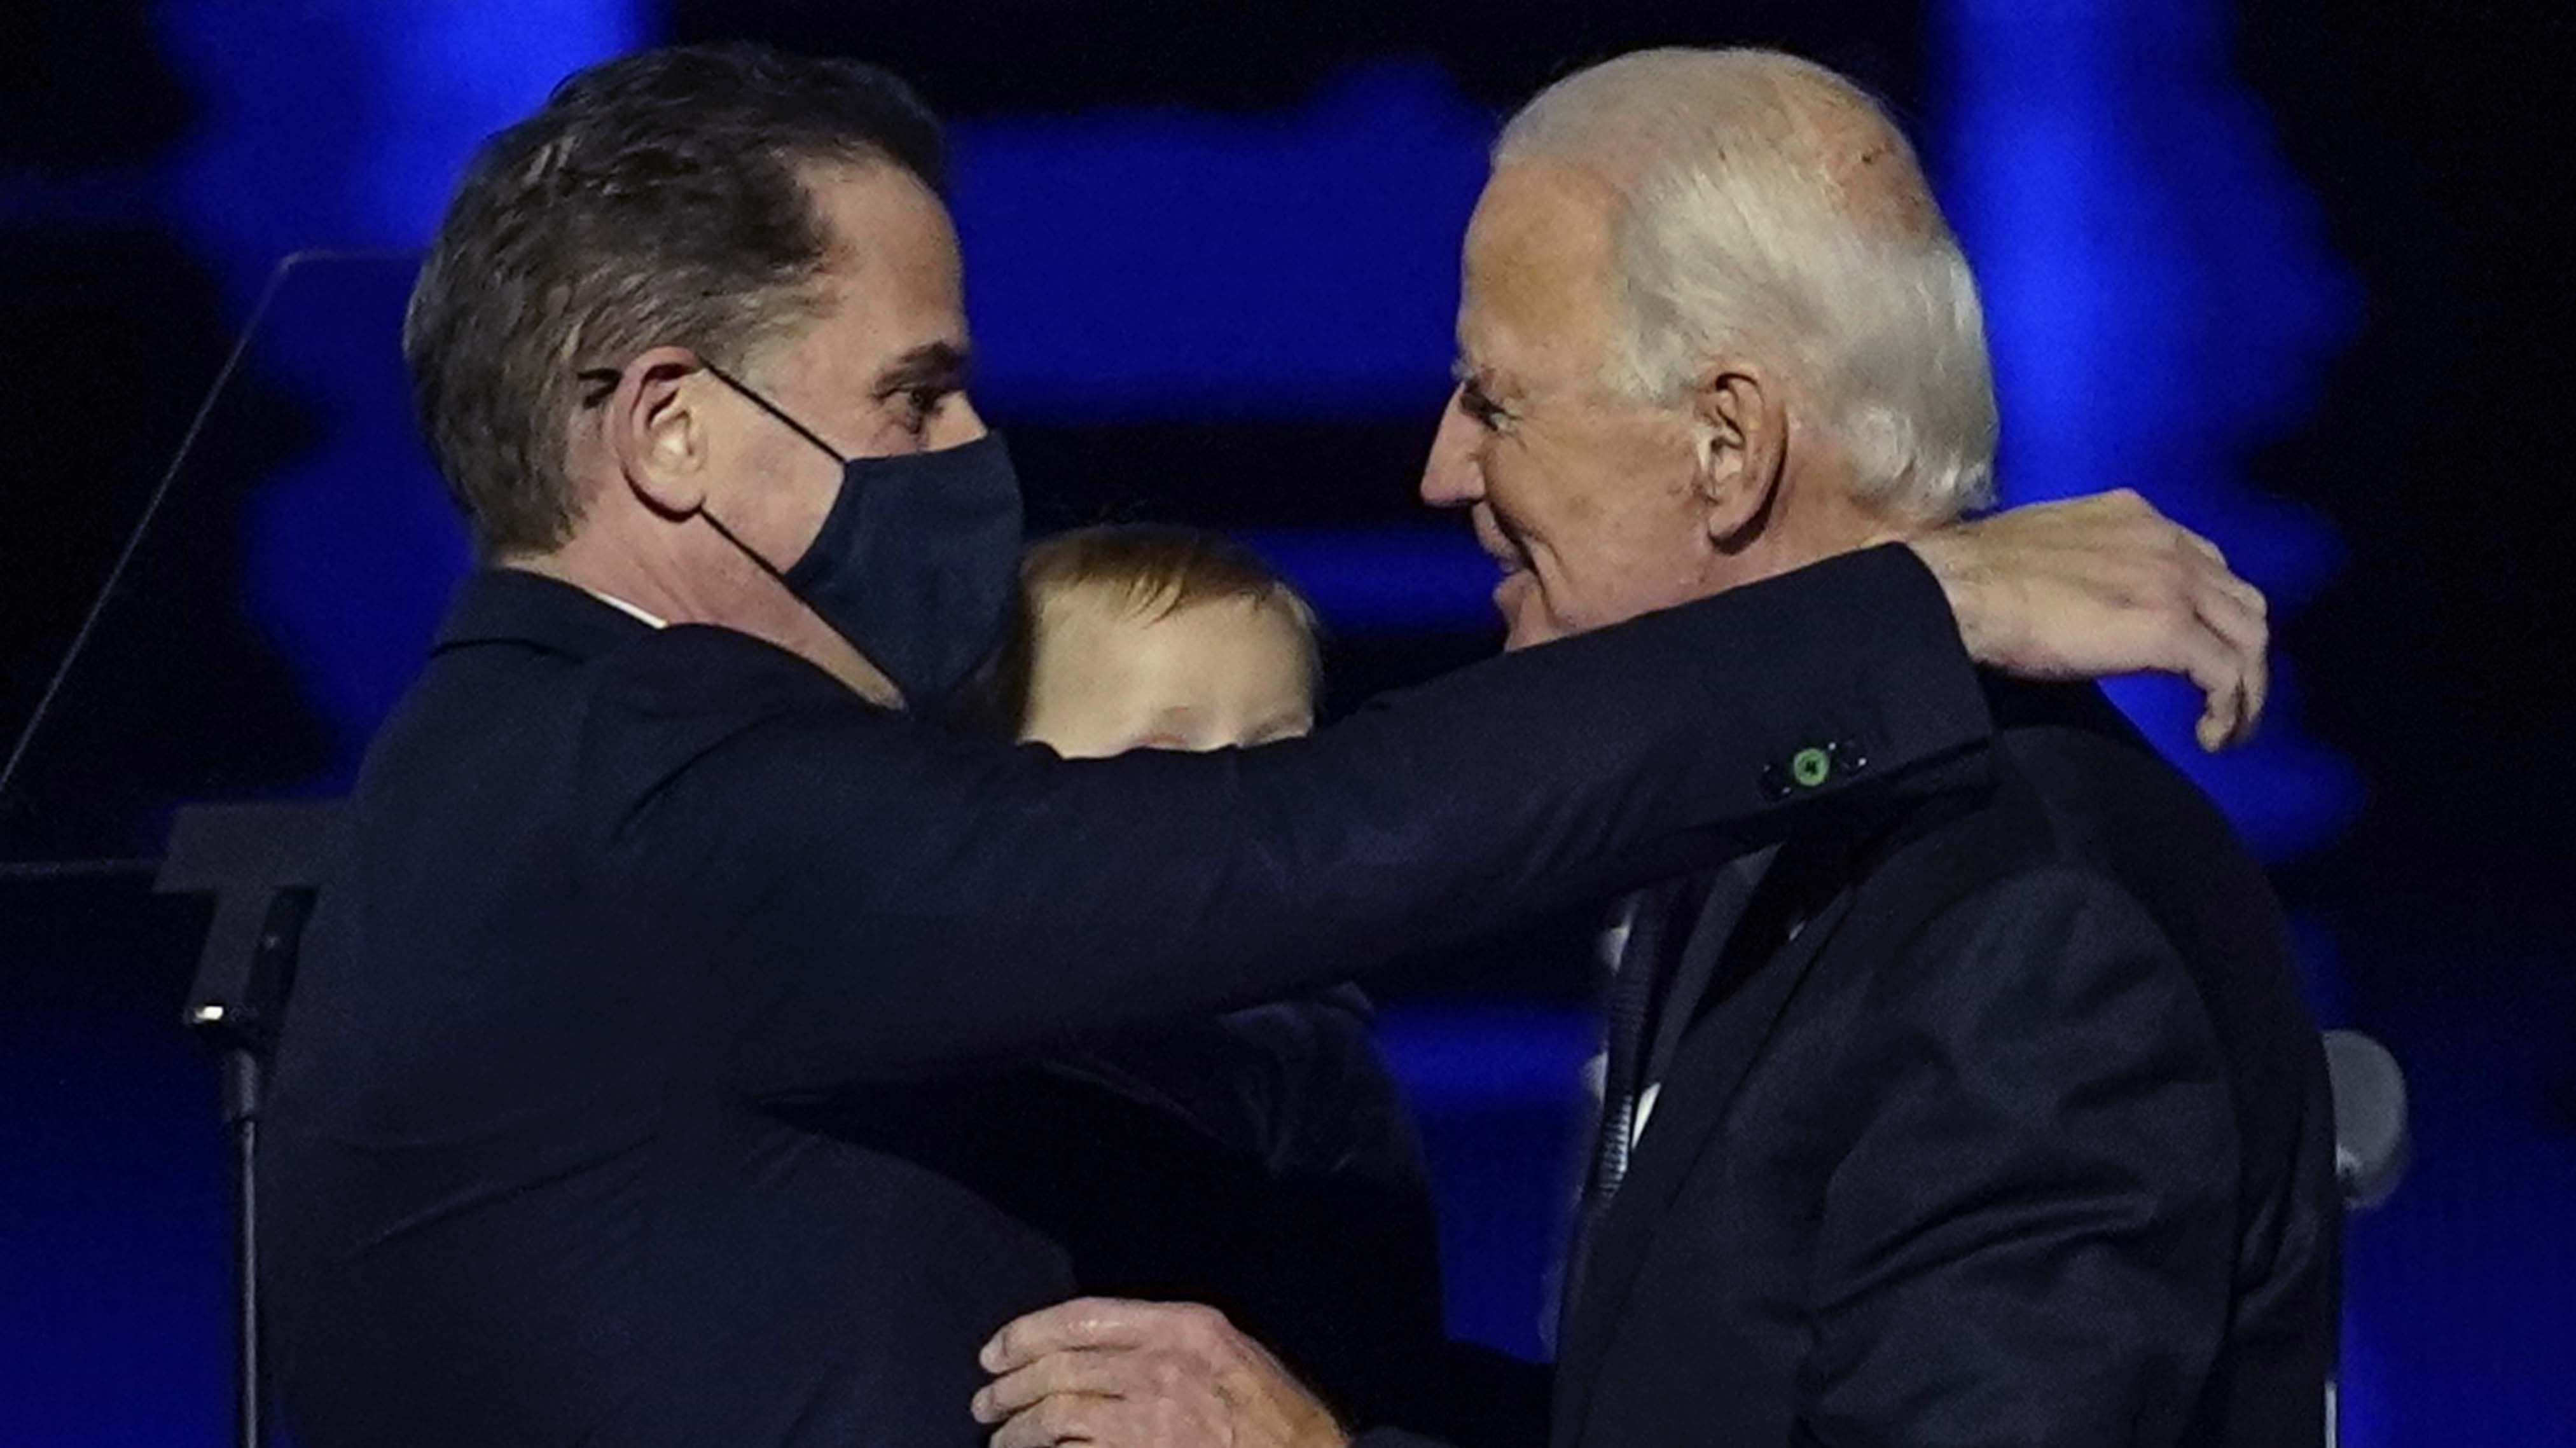 El presidente electo Joe Biden, a la derecha, abraza a su hijo Hunter Biden, a la izquierda, en Wilmington.